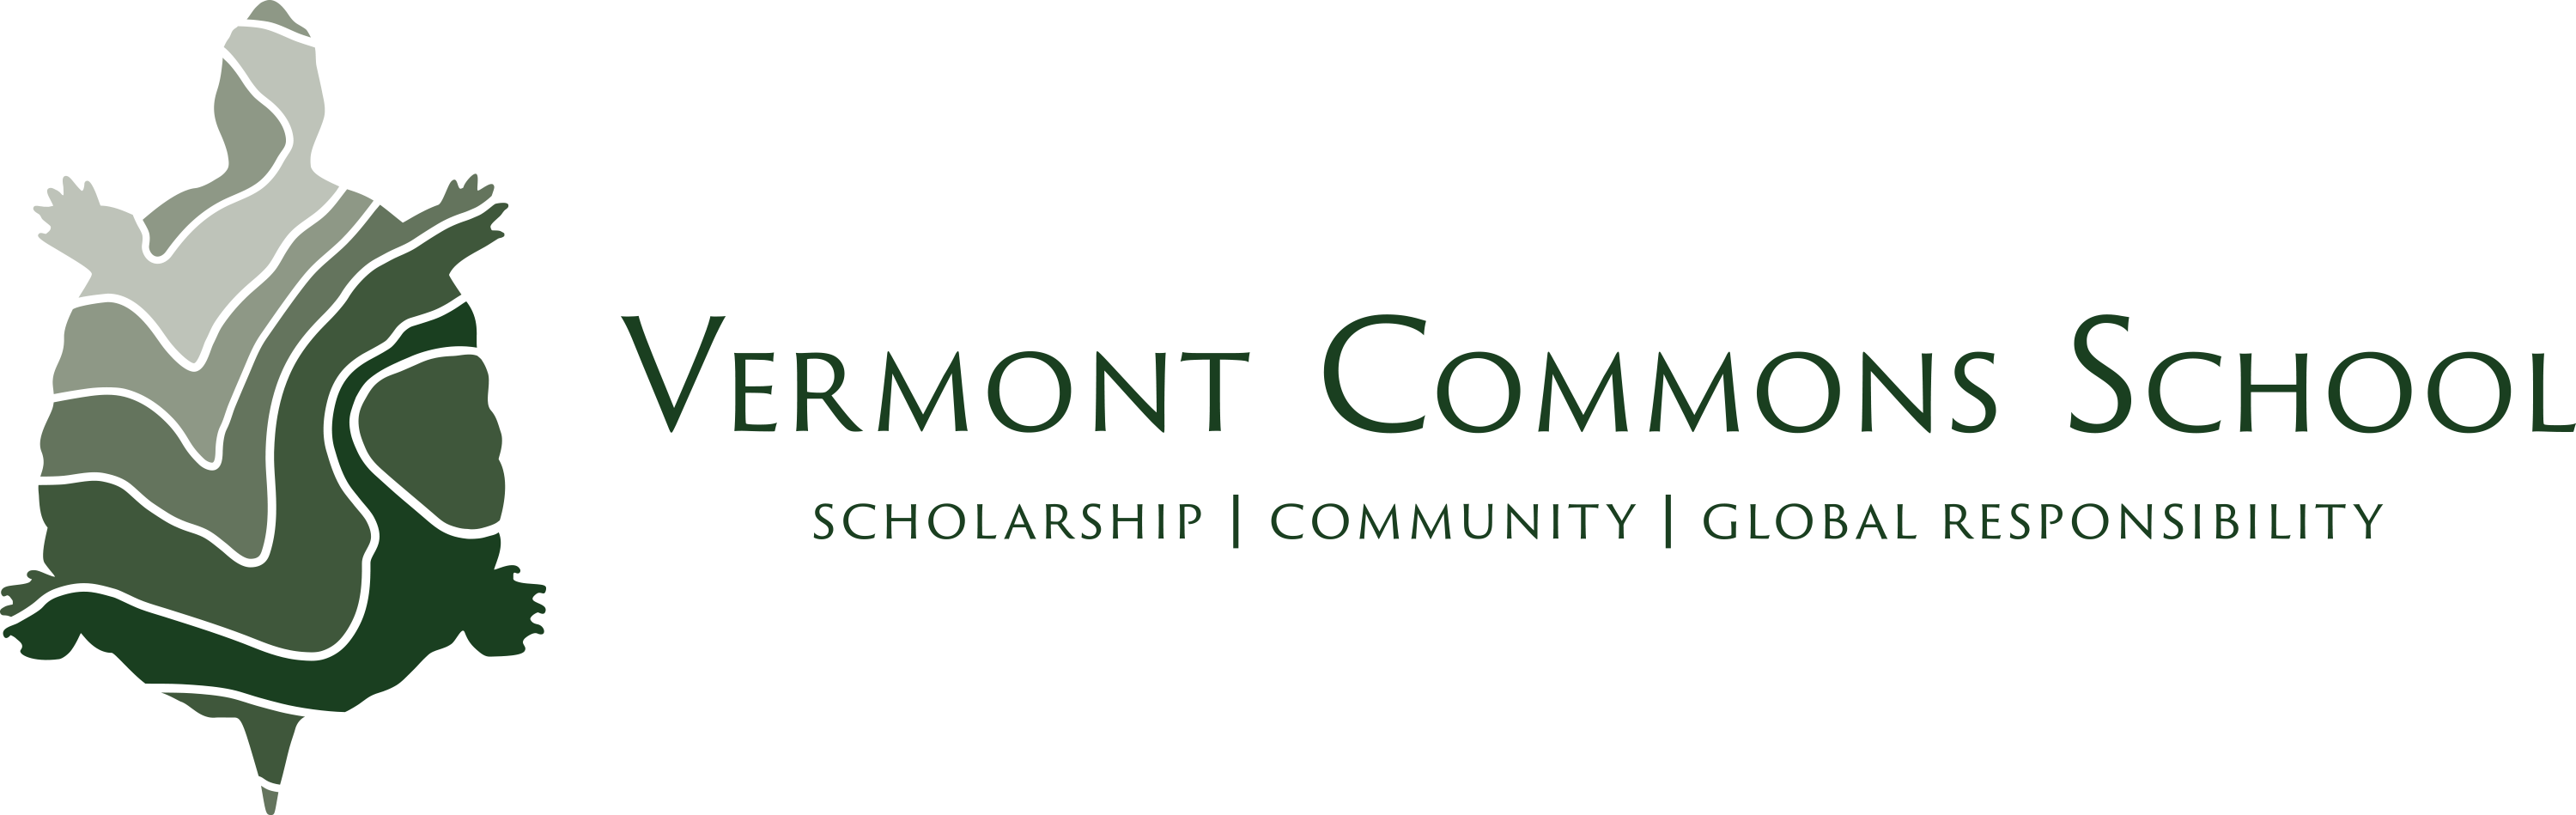 Vermont Commons School